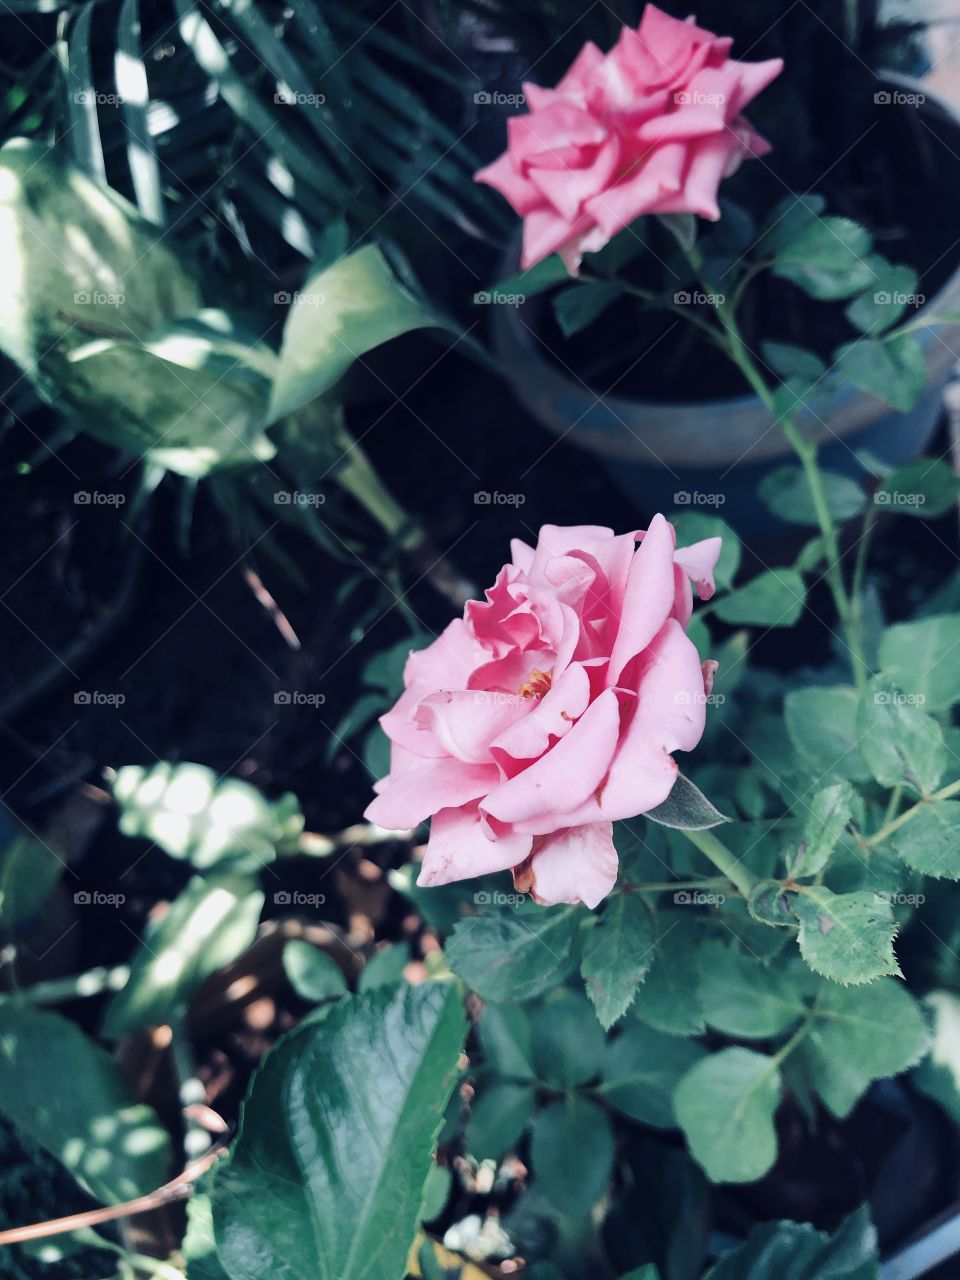 Roses in my garden 